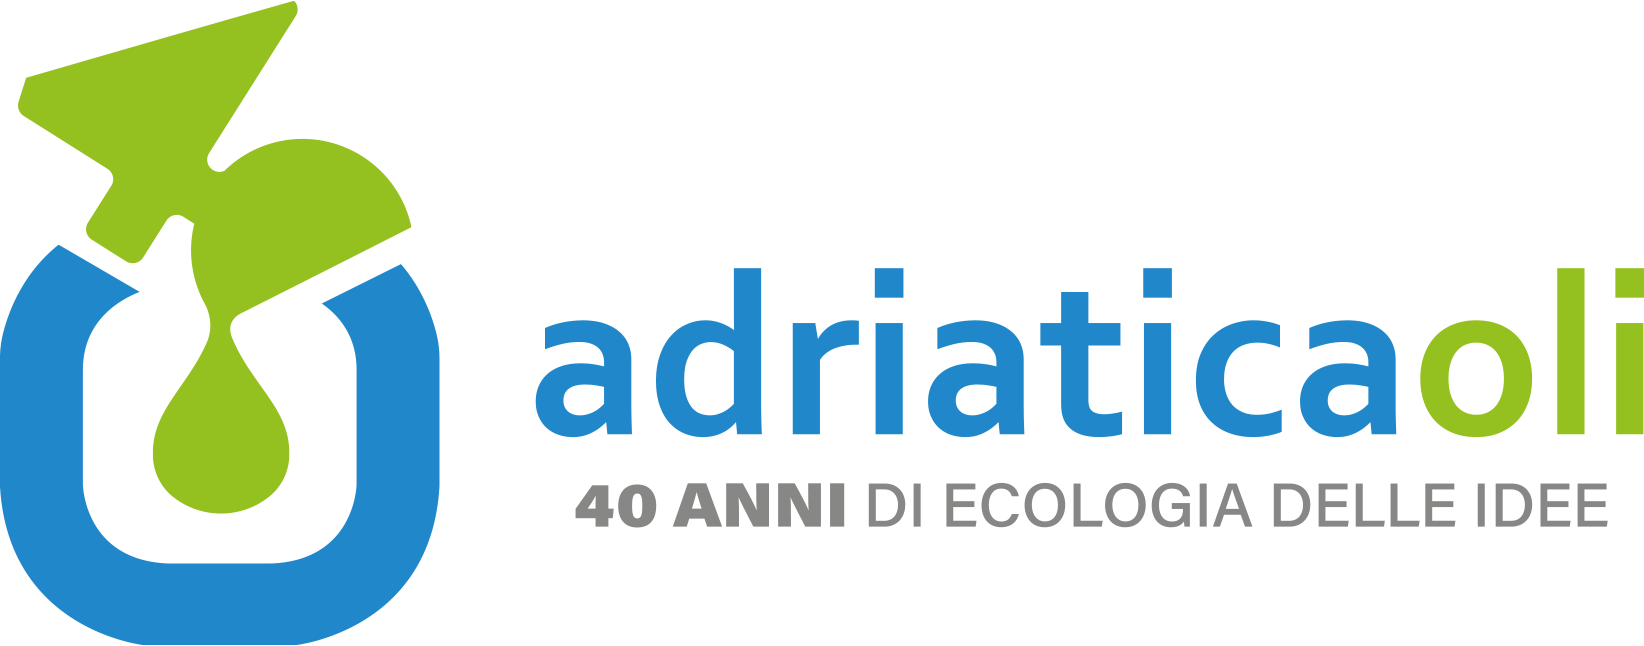 Adriatica Oli logo